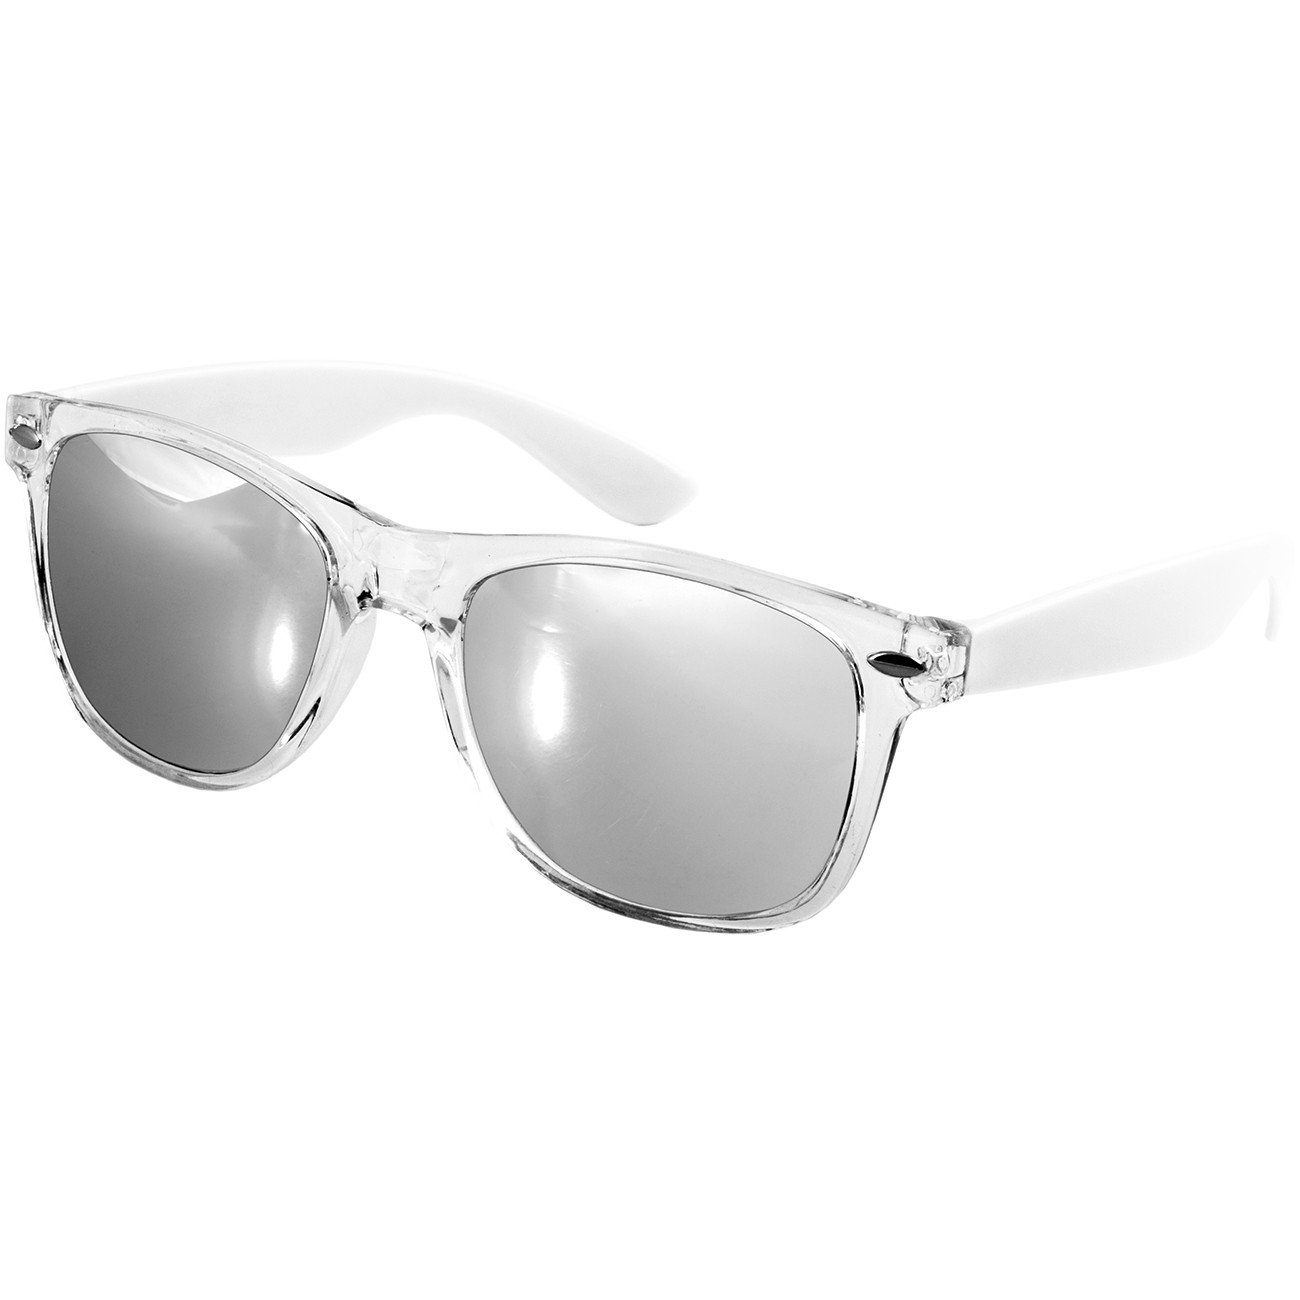 Caspar Sonnenbrille SG017 Damen RETRO Designbrille weiß / silber verspiegelt